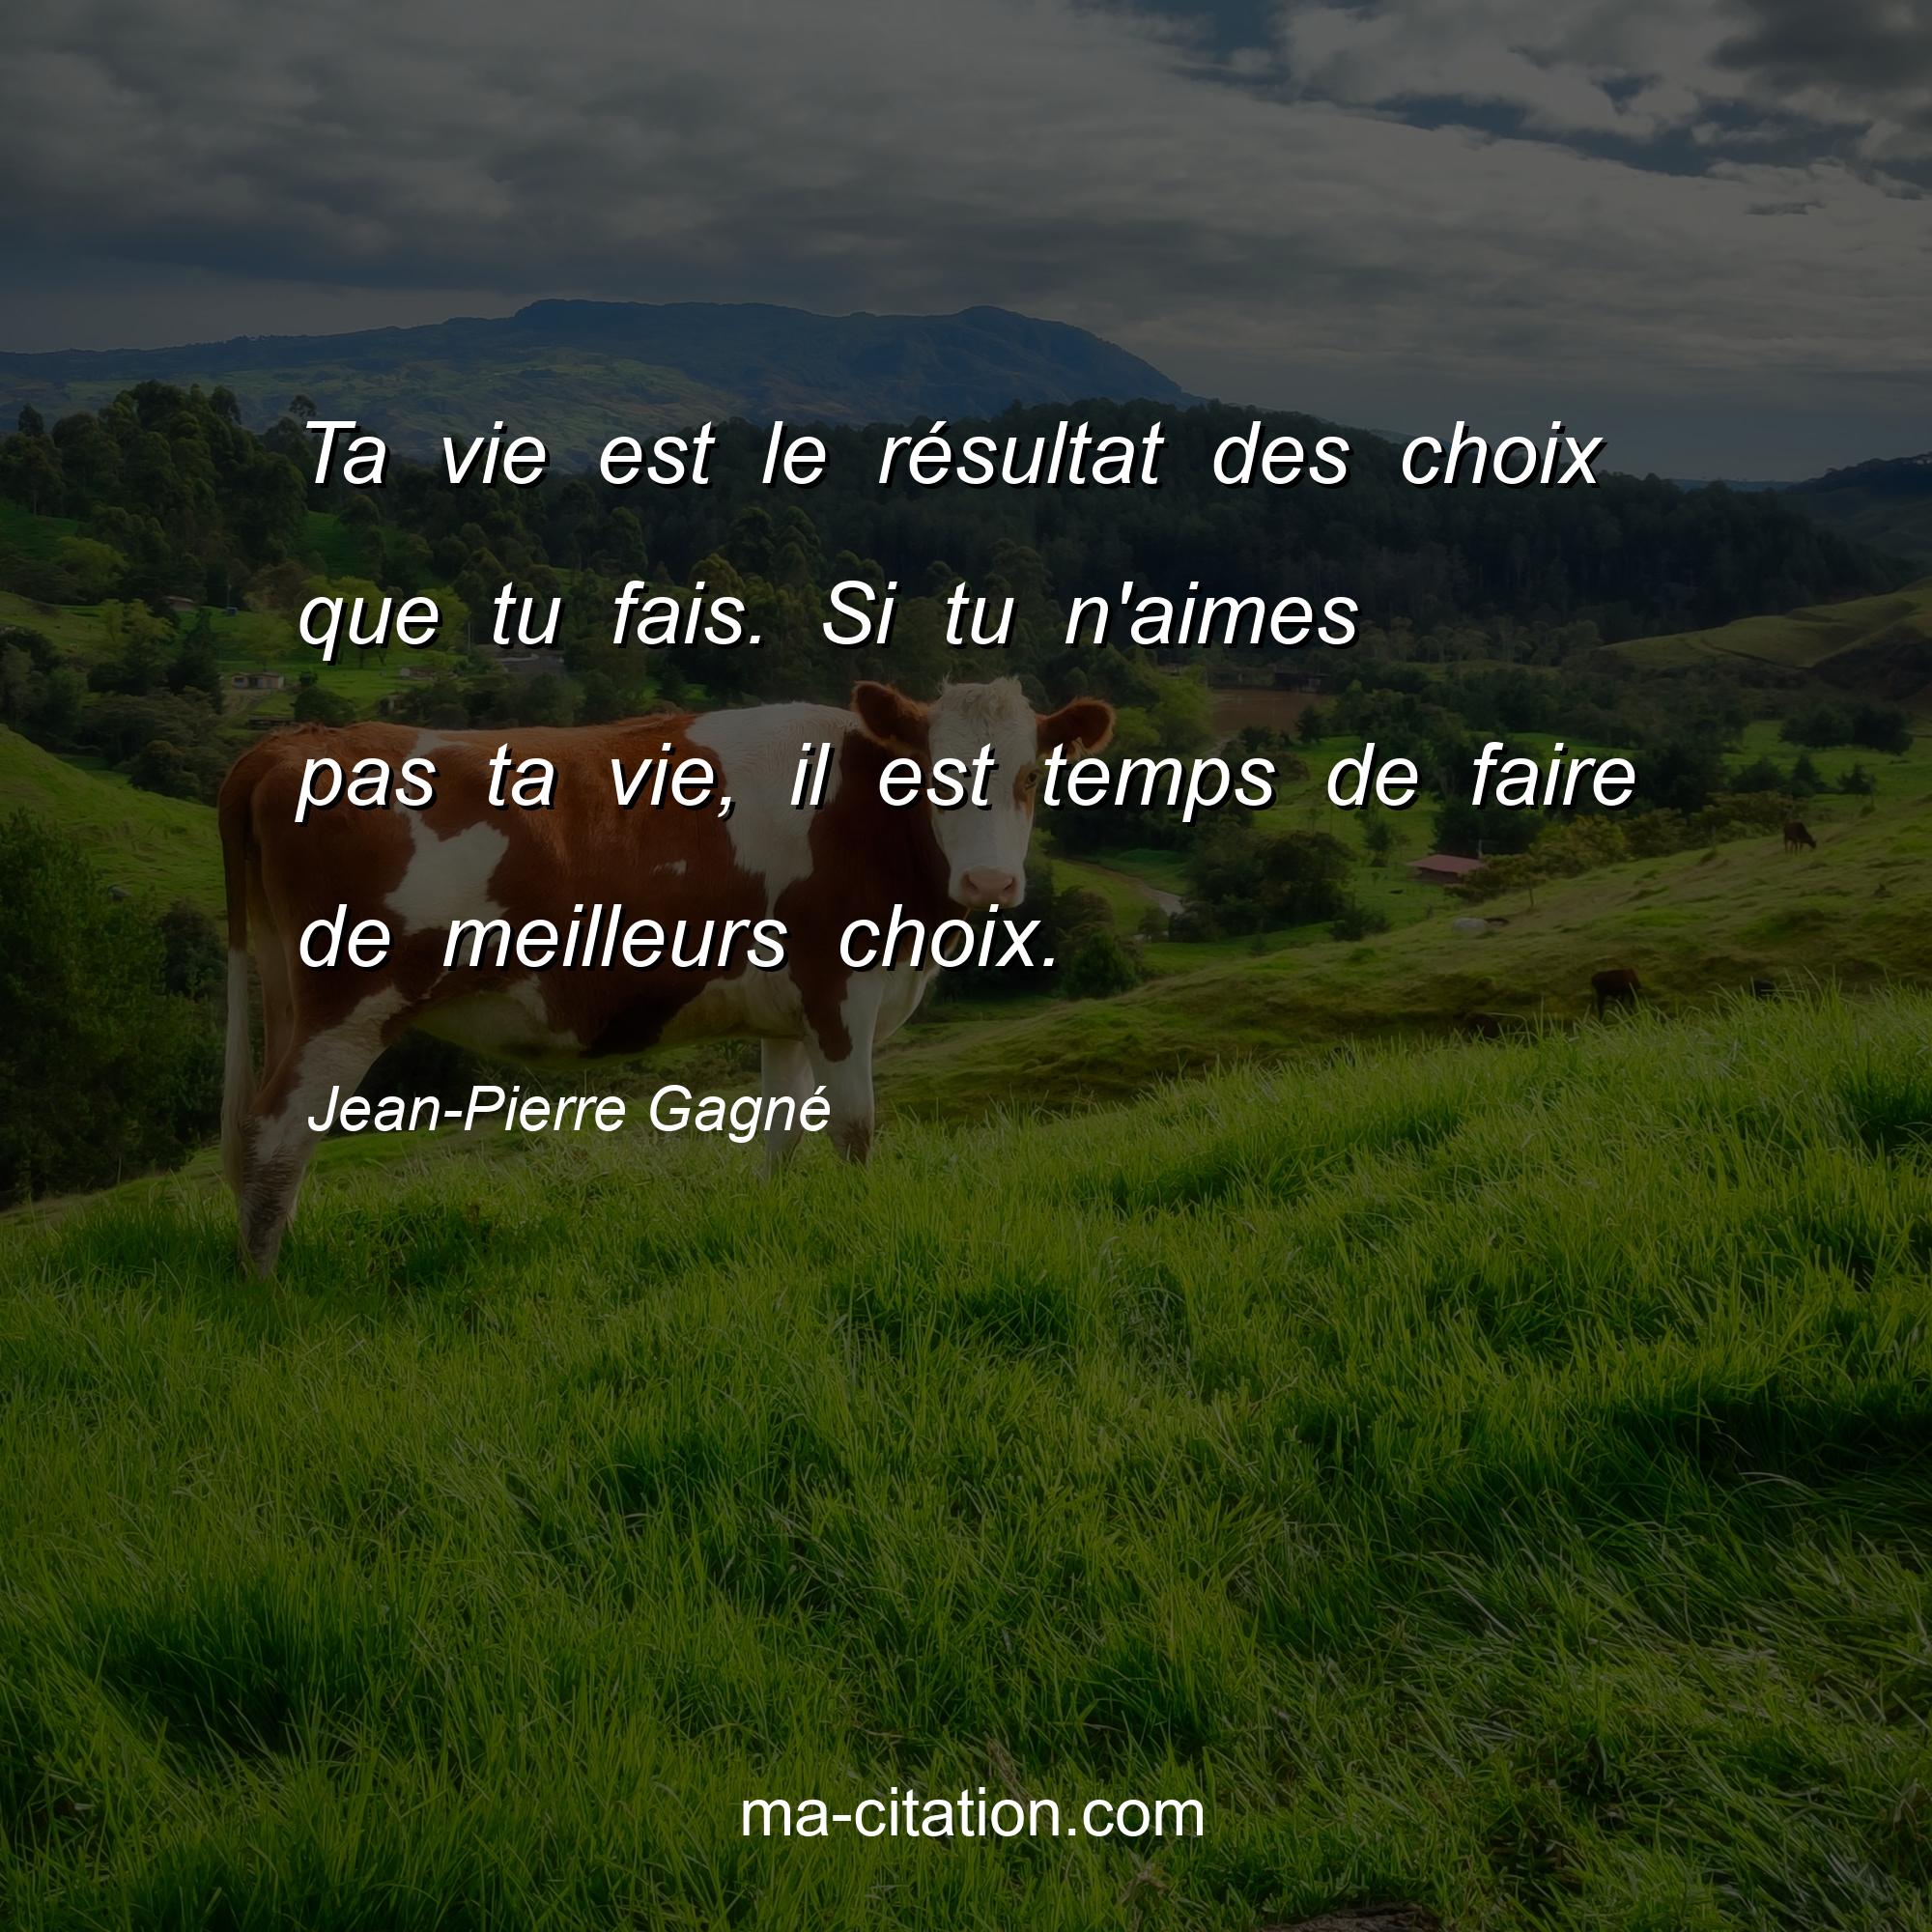 Jean-Pierre Gagné : Ta vie est le résultat des choix que tu fais. Si tu n'aimes pas ta vie, il est temps de faire de meilleurs choix.